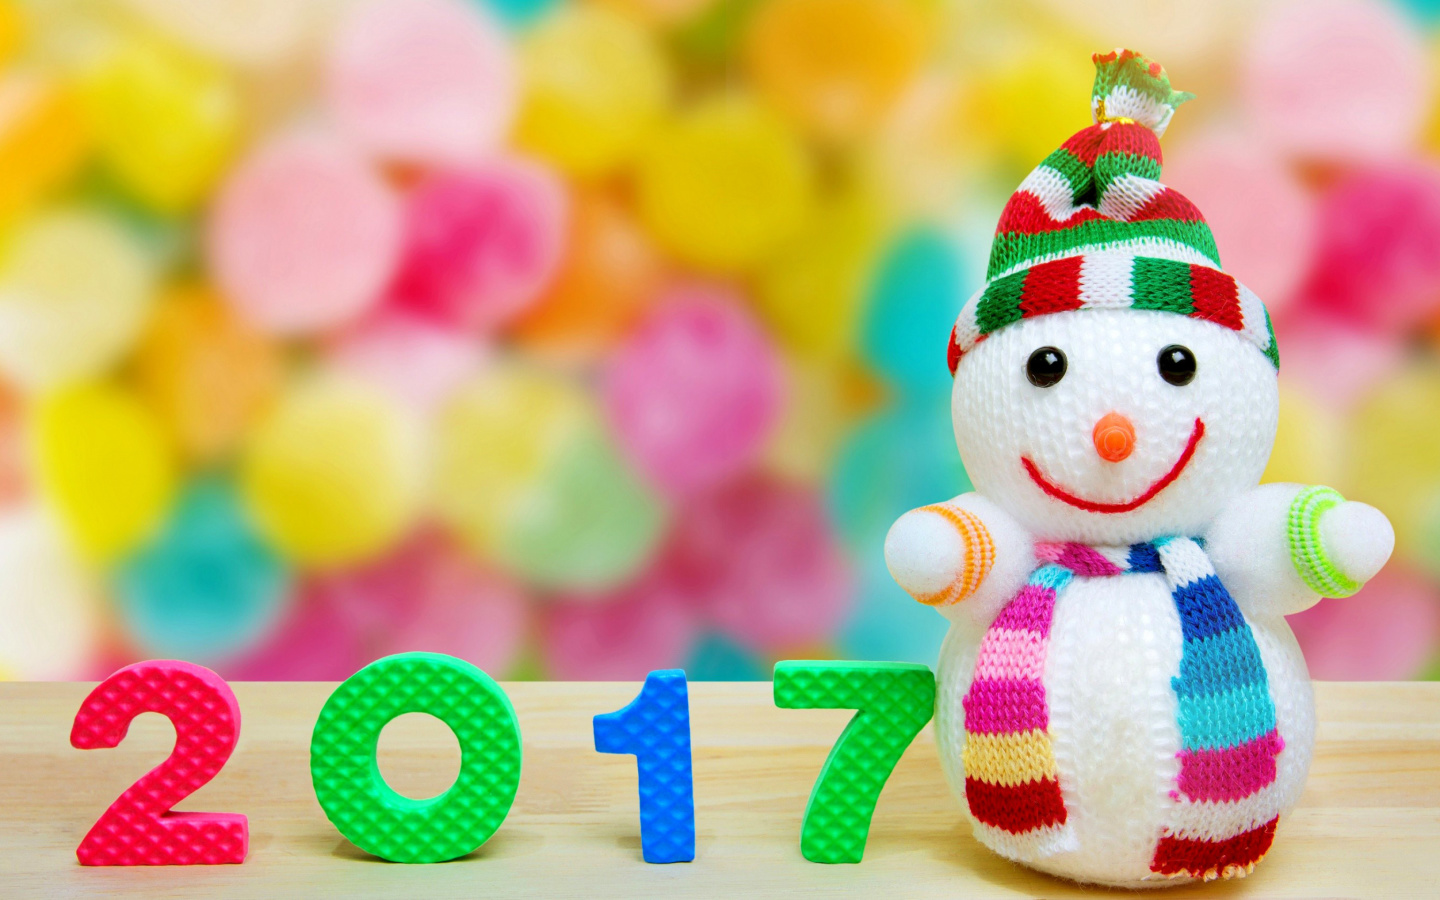 2017 New Year Snowman wallpaper 1440x900